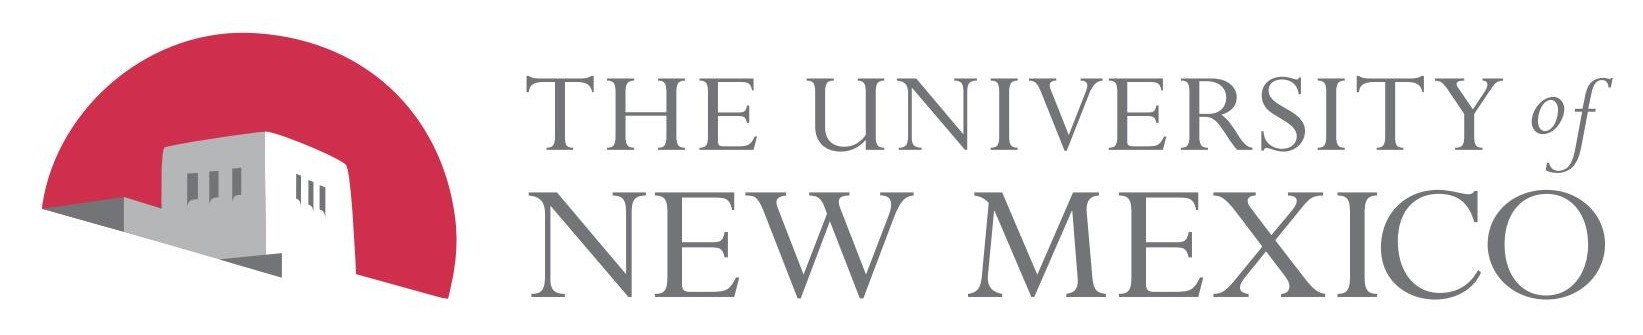 UNM University of New Mexico logo